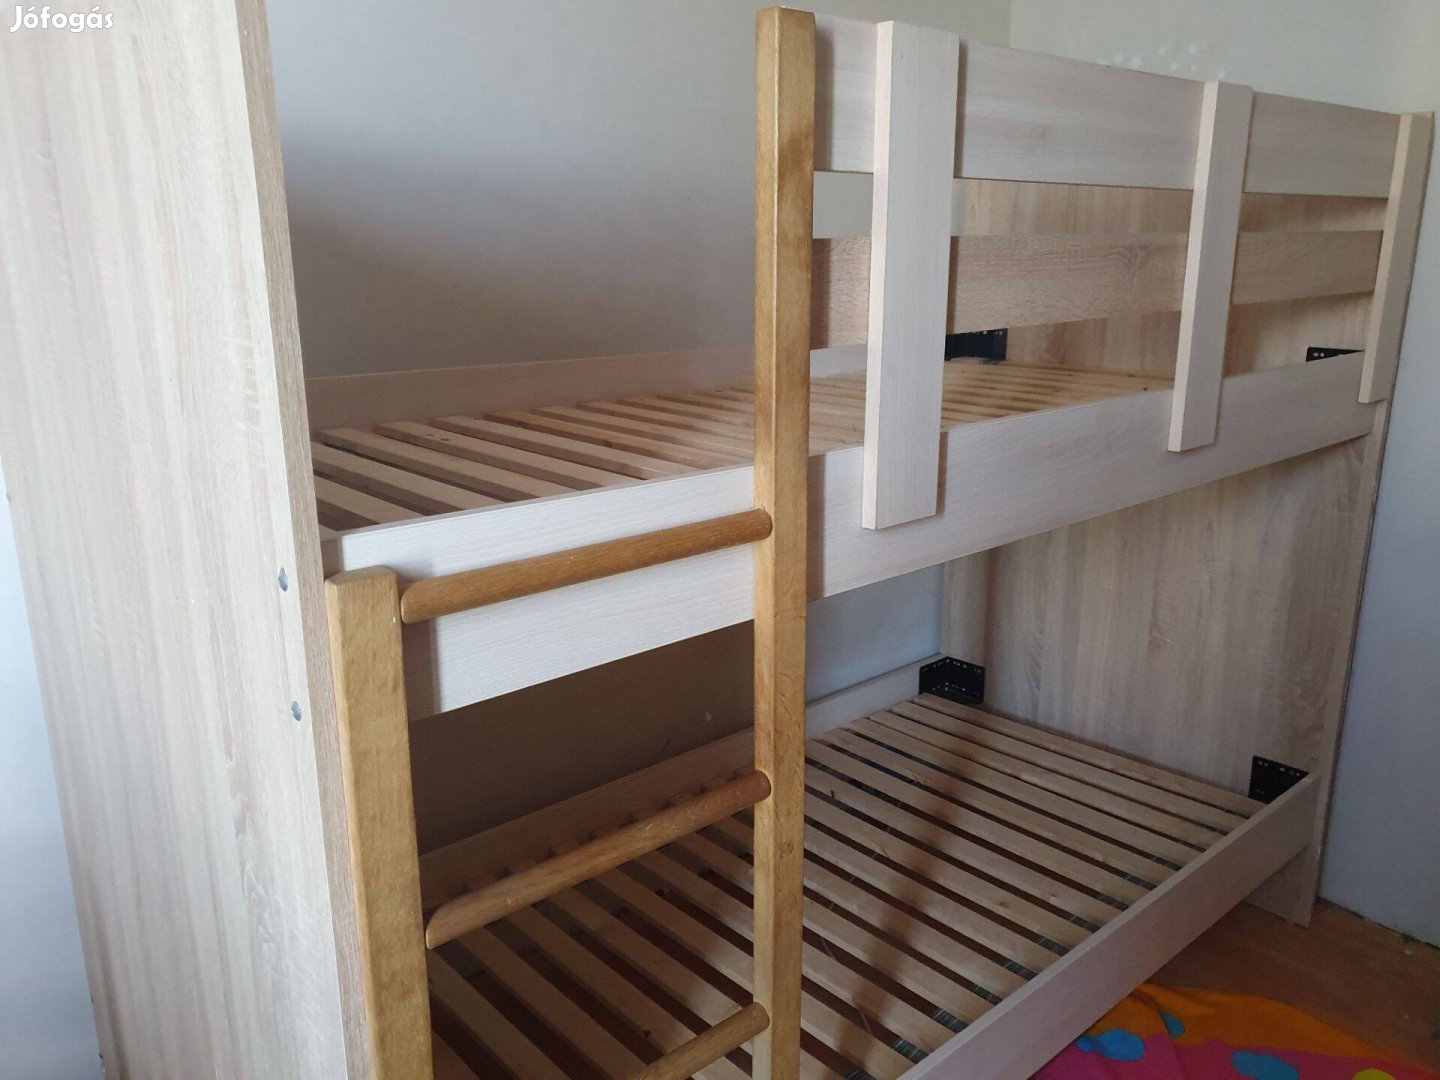 Eladó használt emeletes ágy